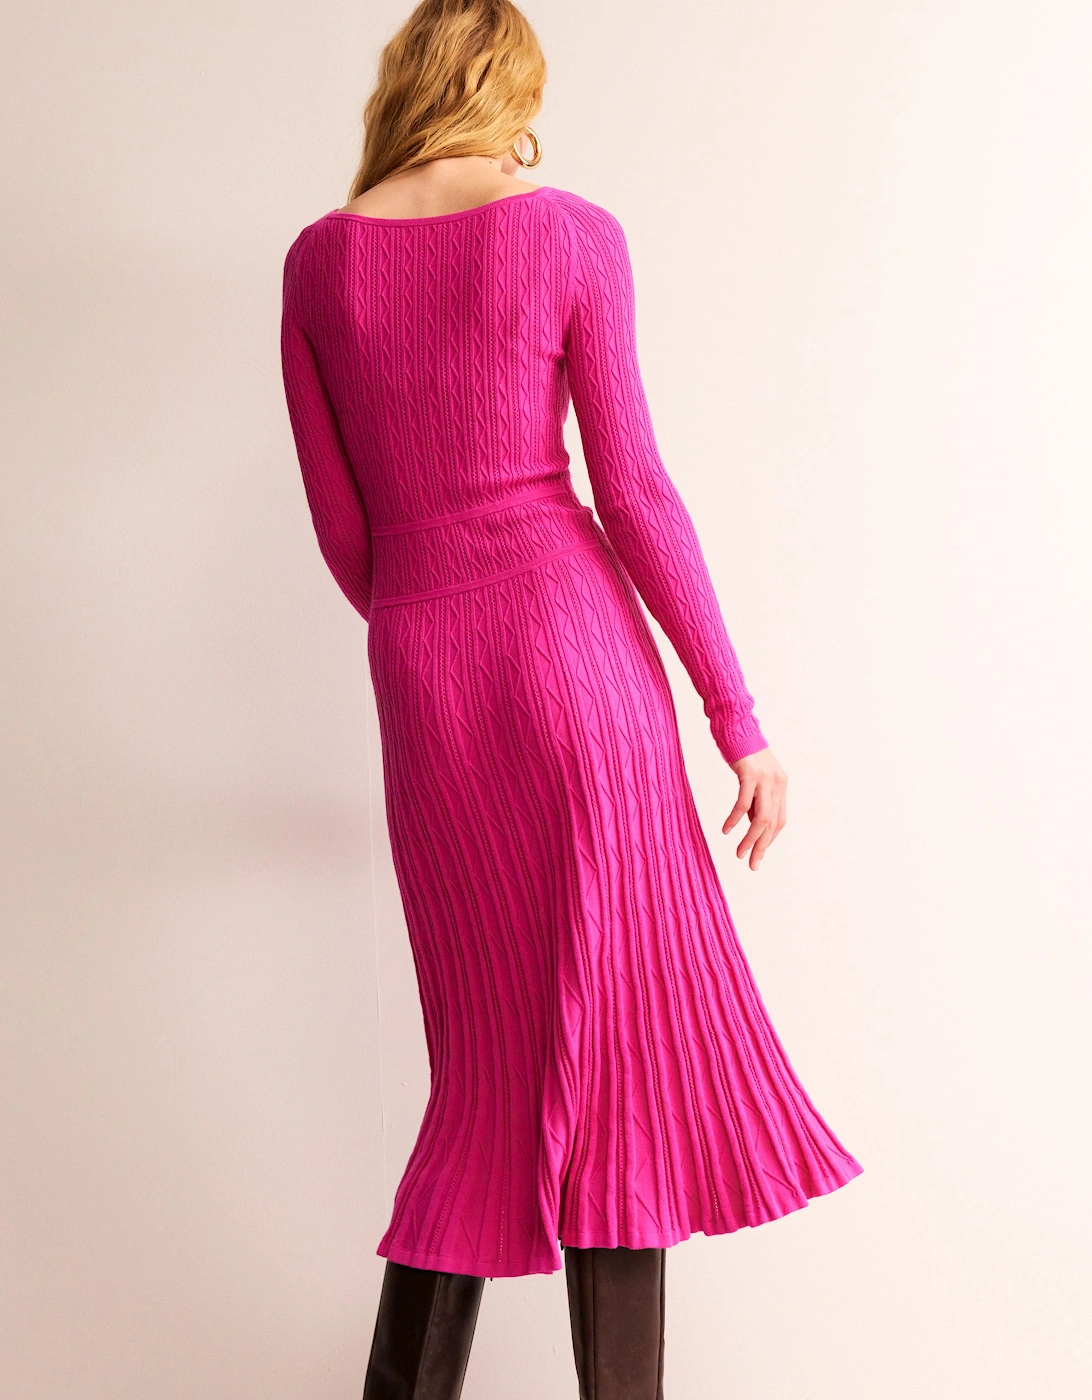 Imogen Empire Knitted Dress